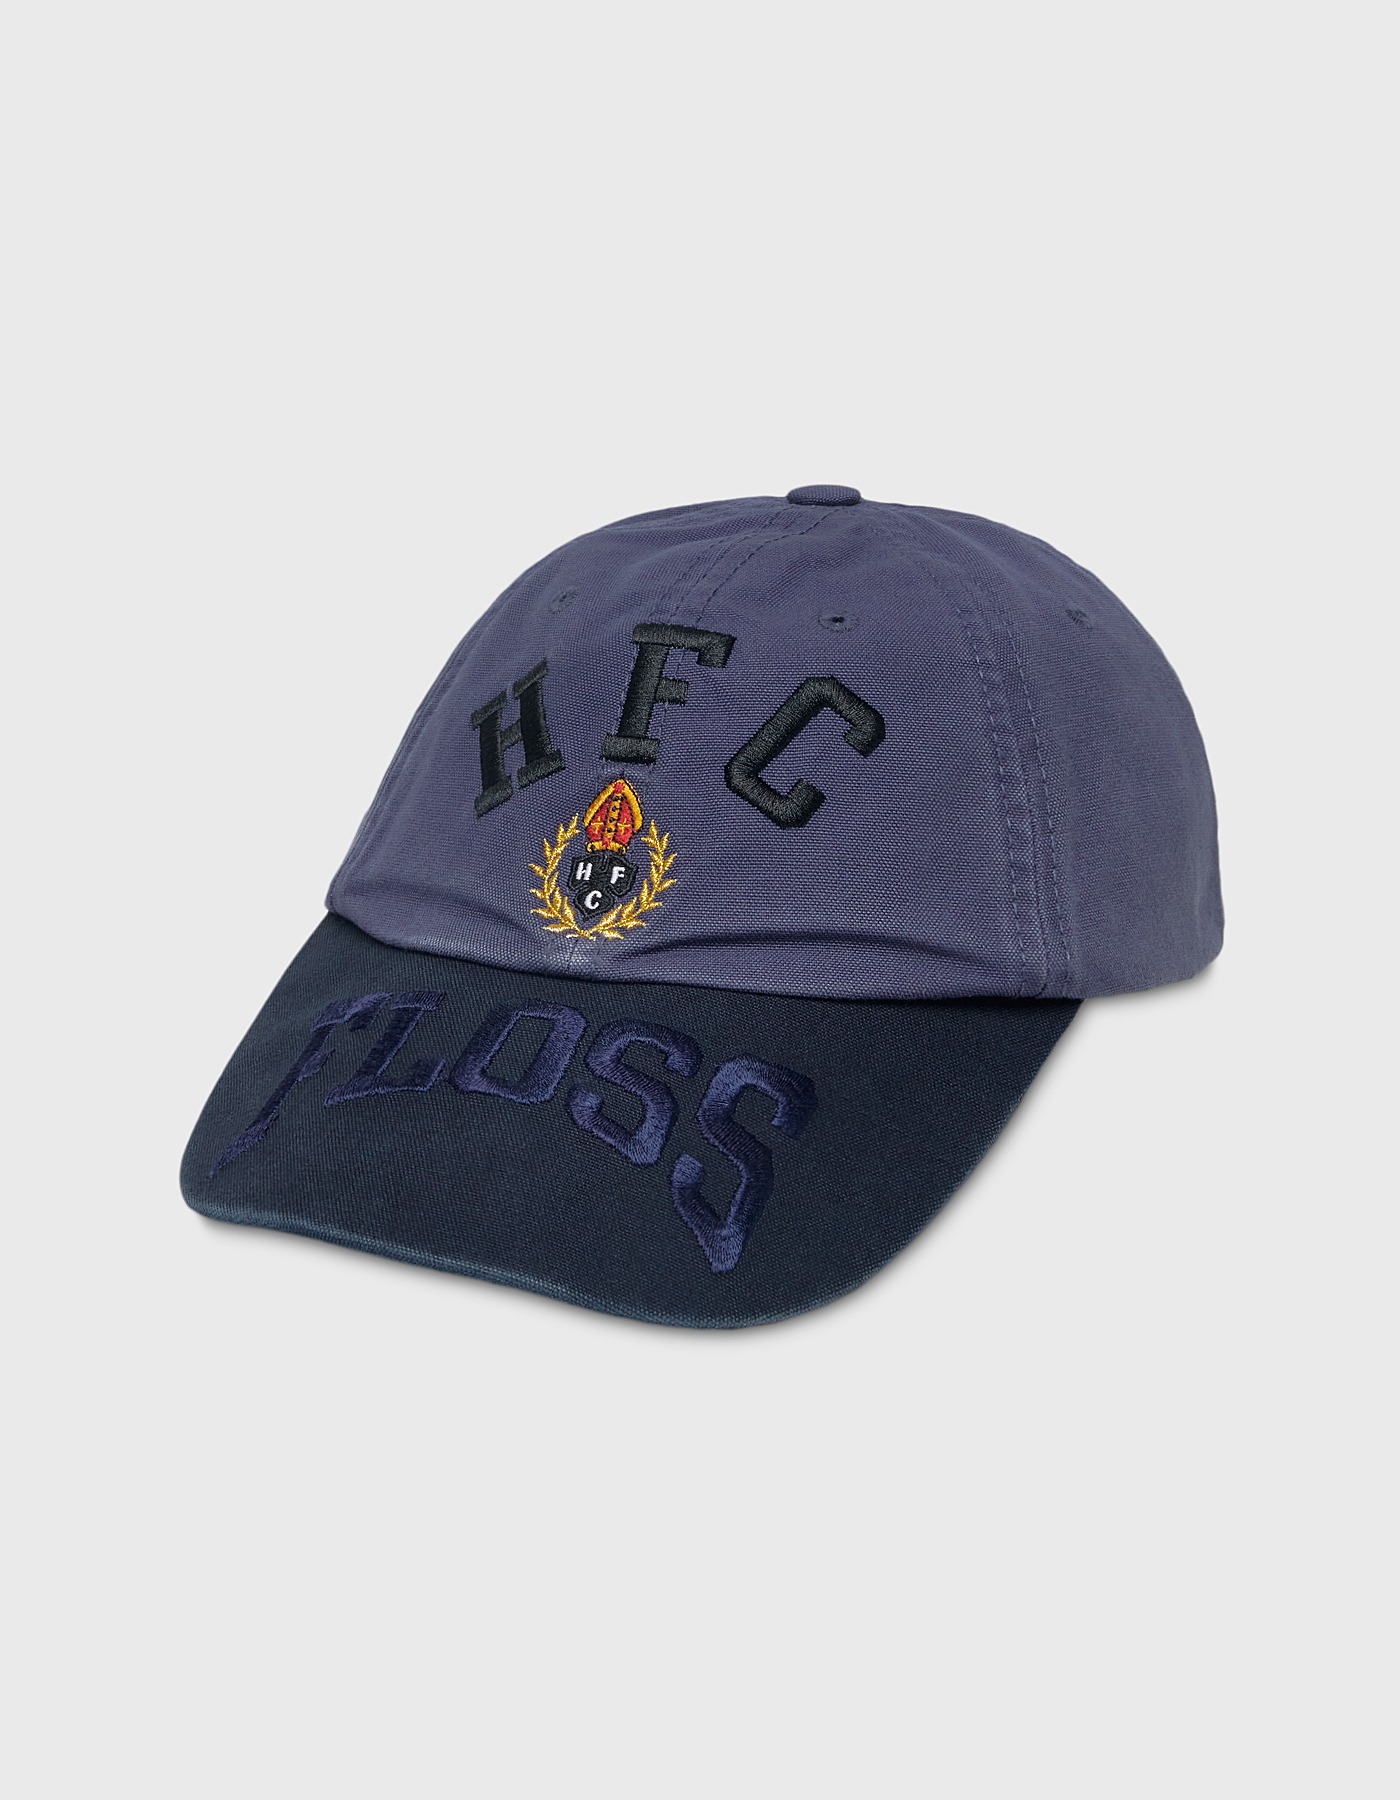 HFC CREST 6 PANEL CAP / Purple Navy-Navy